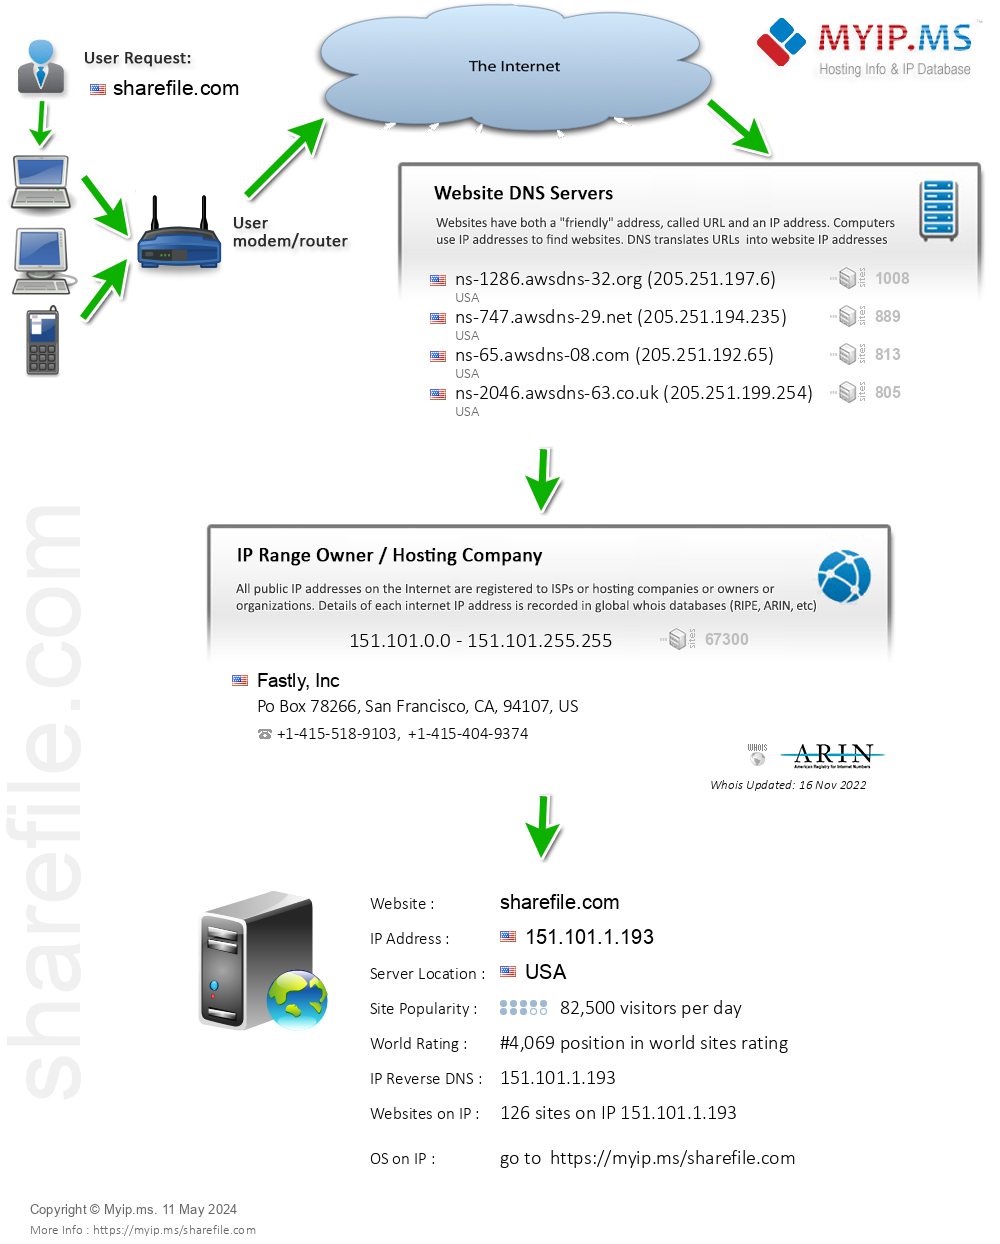 Sharefile.com - Website Hosting Visual IP Diagram